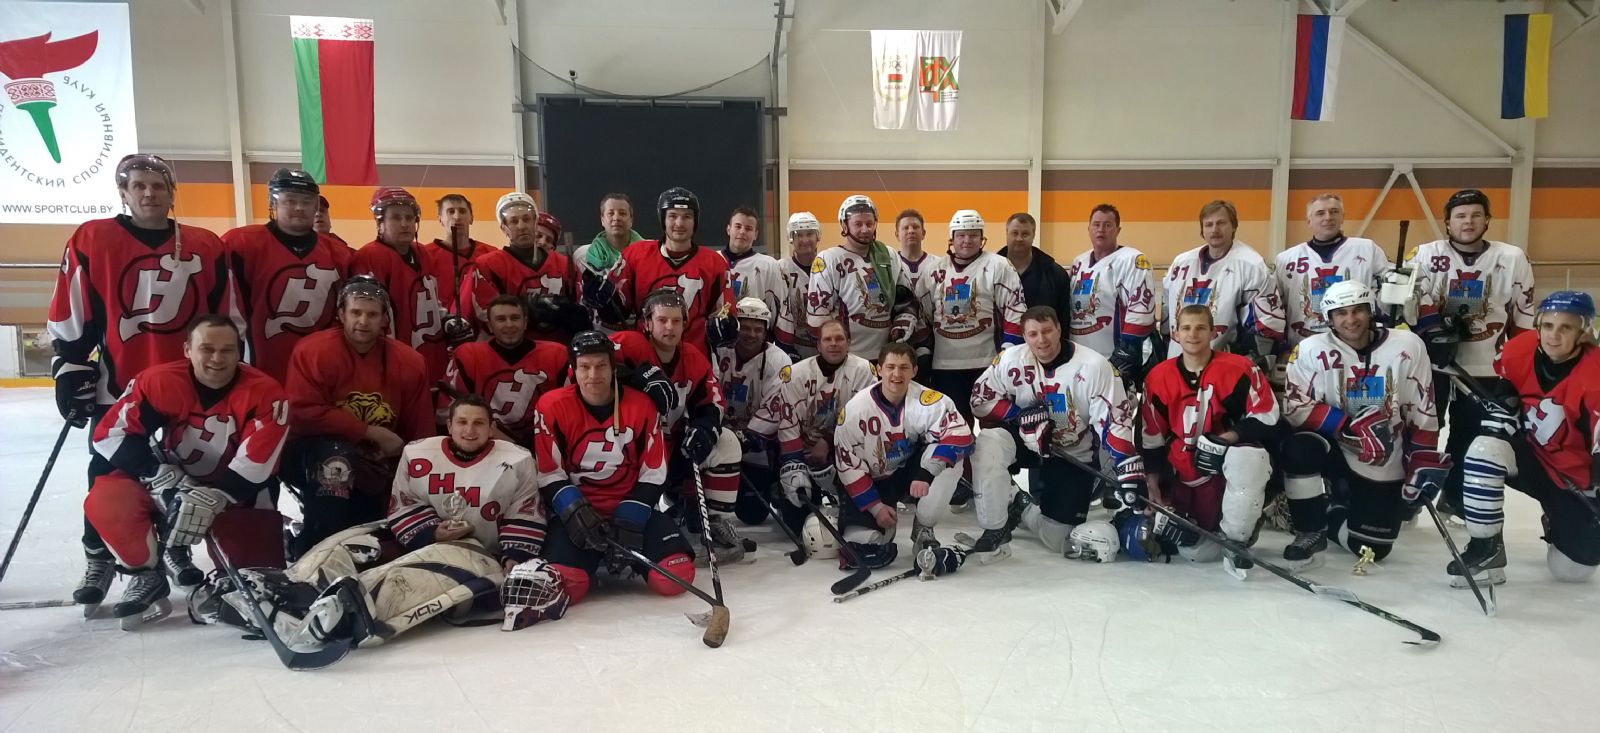 Хоккеисты из Сергиева Посада победили в турнире городов-побратимов